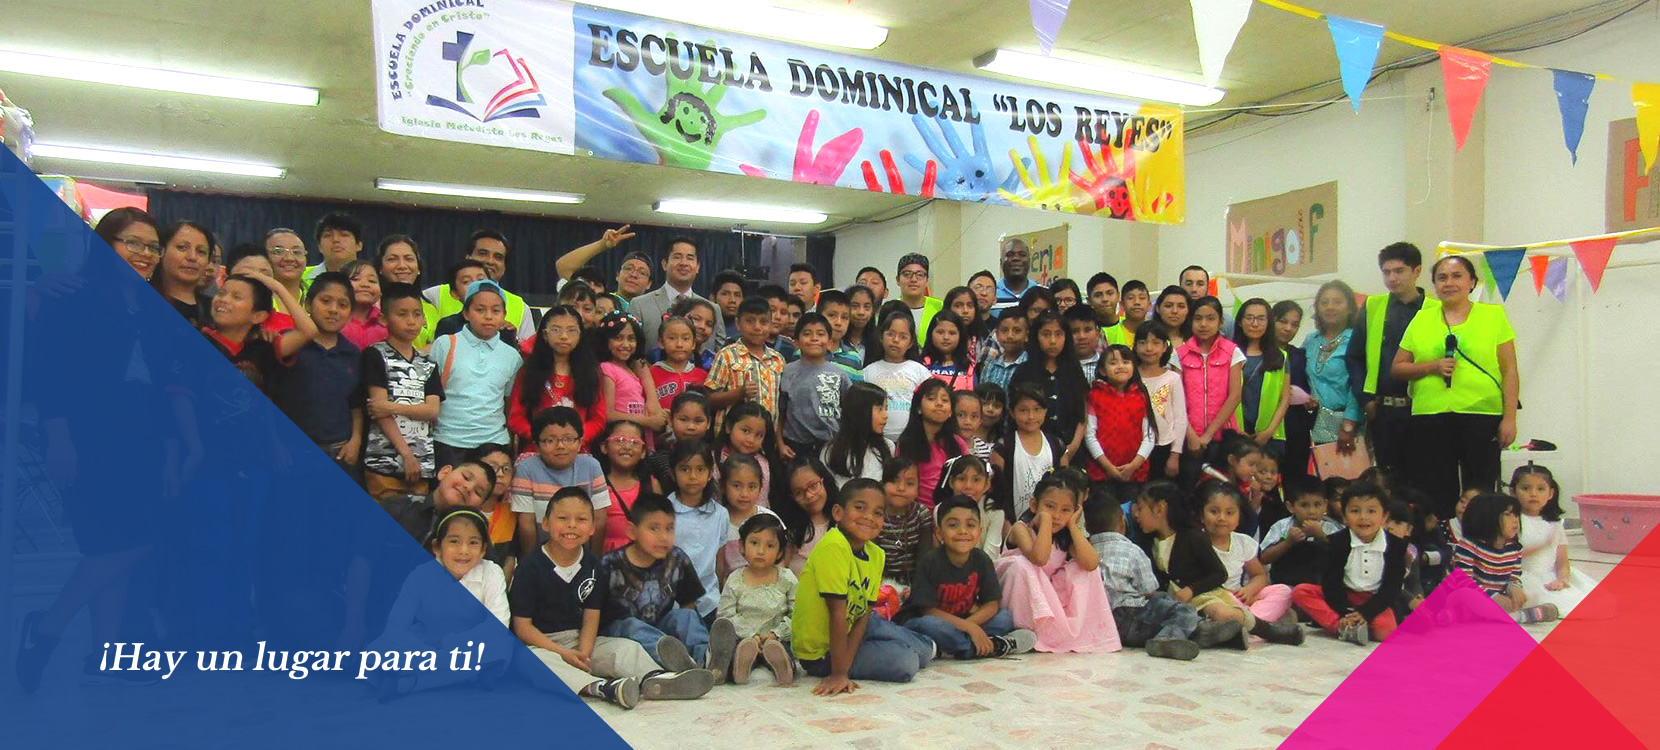 Escuela Dominical Los Reyes